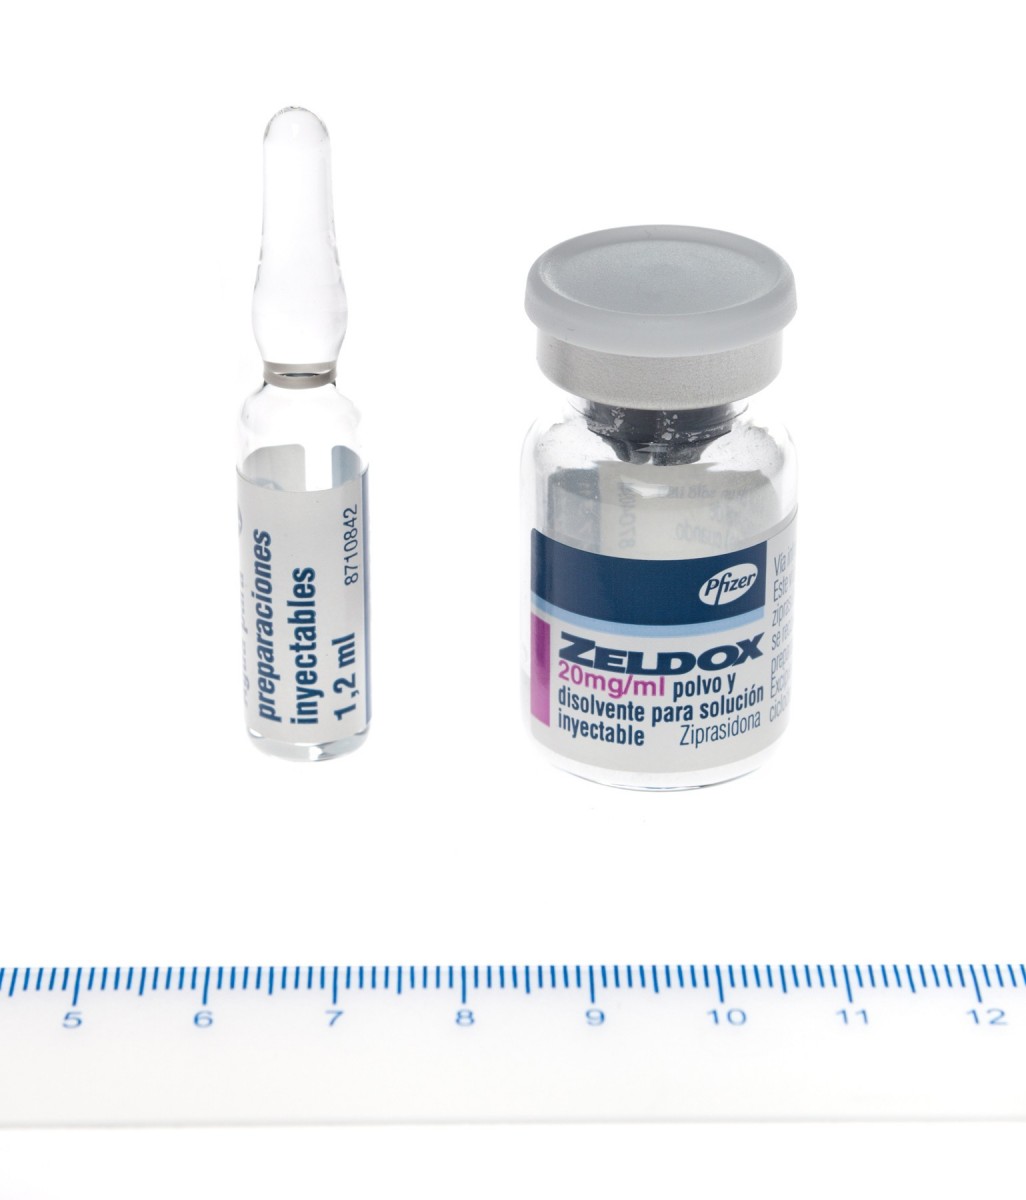 ZELDOX 20 mg/ml POLVO Y DISOLVENTE PARA SOLUCION  INYECTABLE , 1 vial + 1 ampolla de disolvente fotografía de la forma farmacéutica.